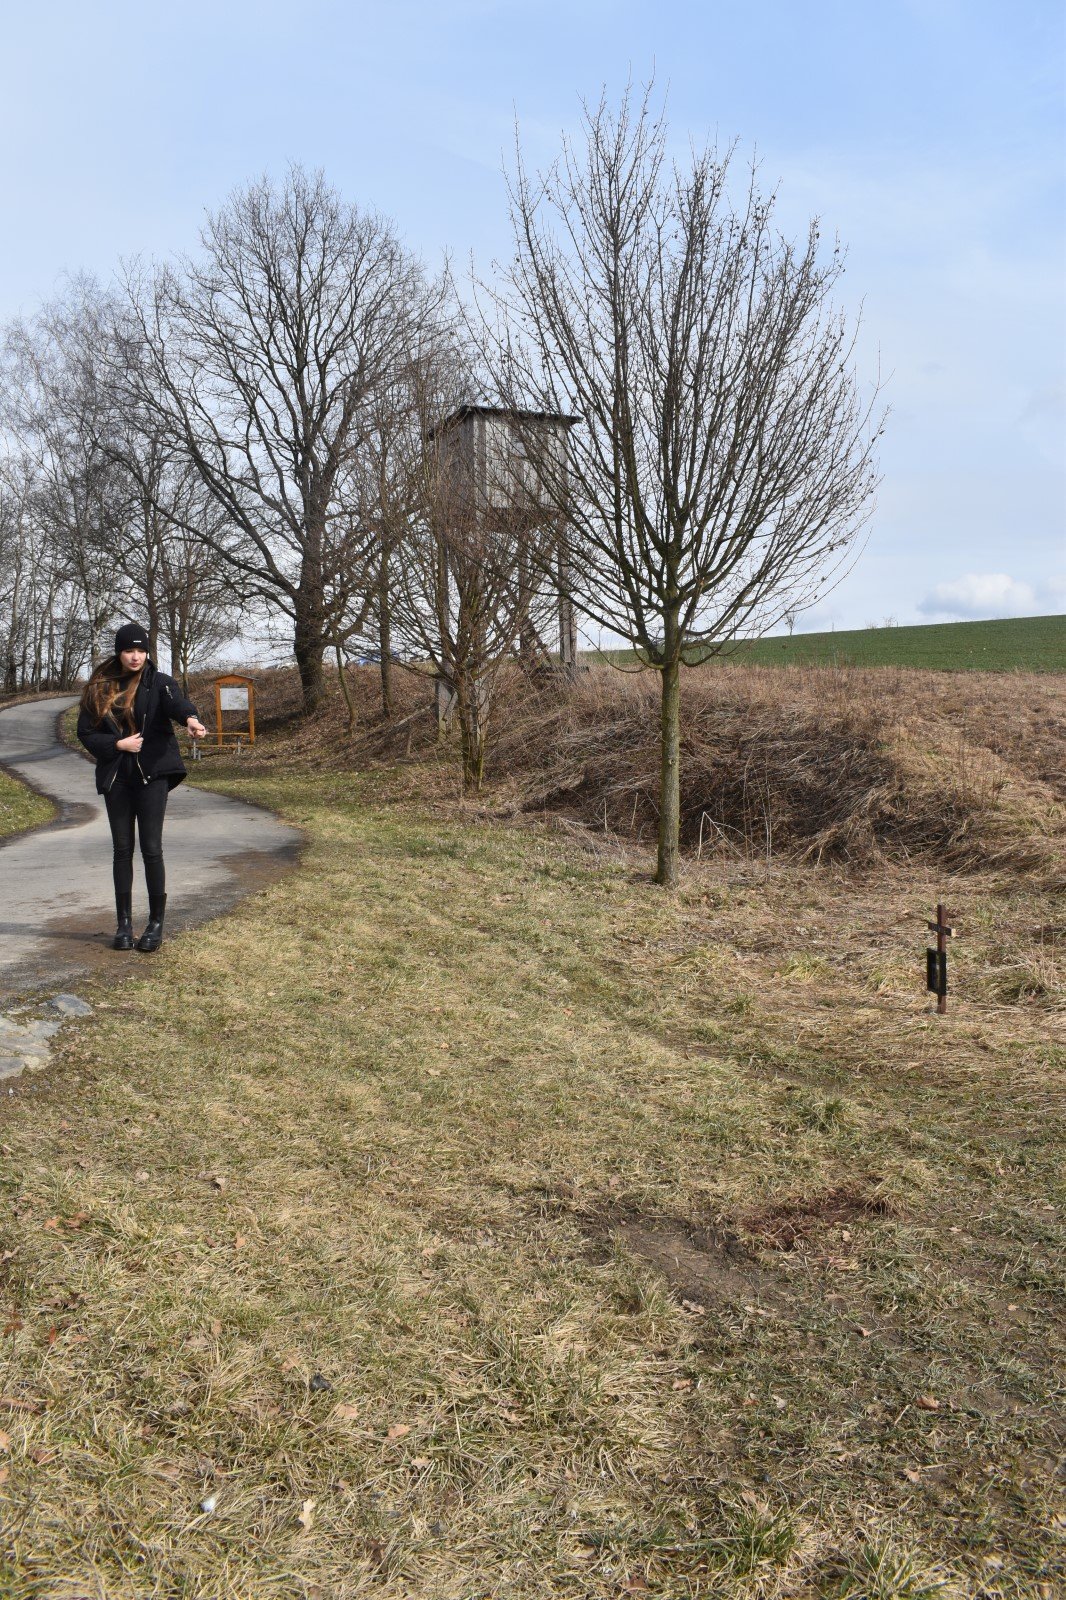 Dívka ukazuje k místu, kde byla Dixie střelena, jen pár metrů od cyklostezky. V pozadí osudný posed.